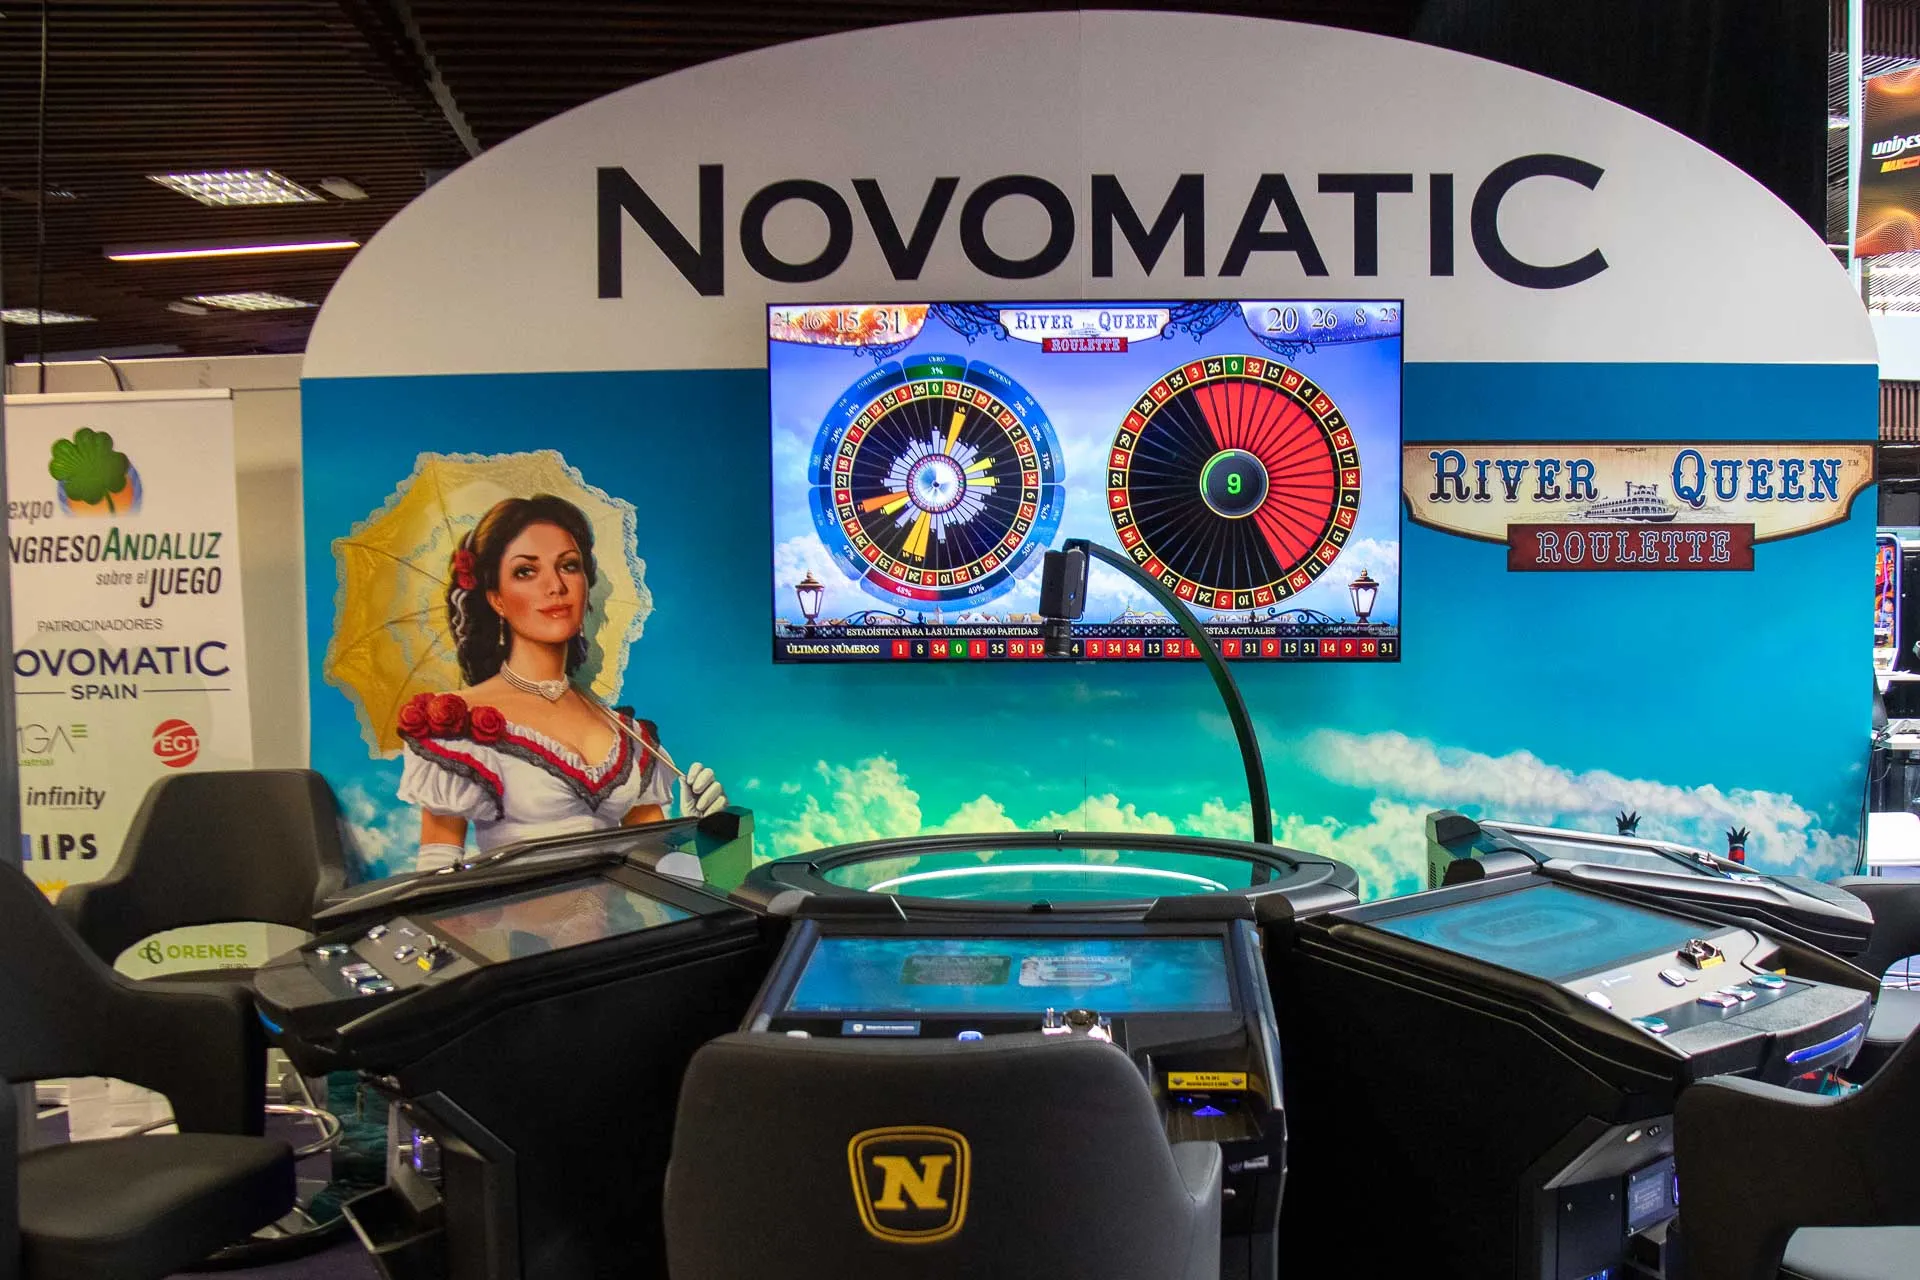 Pared con la ruleta River Queen Roulette de NOVOMATIC en el Expo Congreso Andaluz